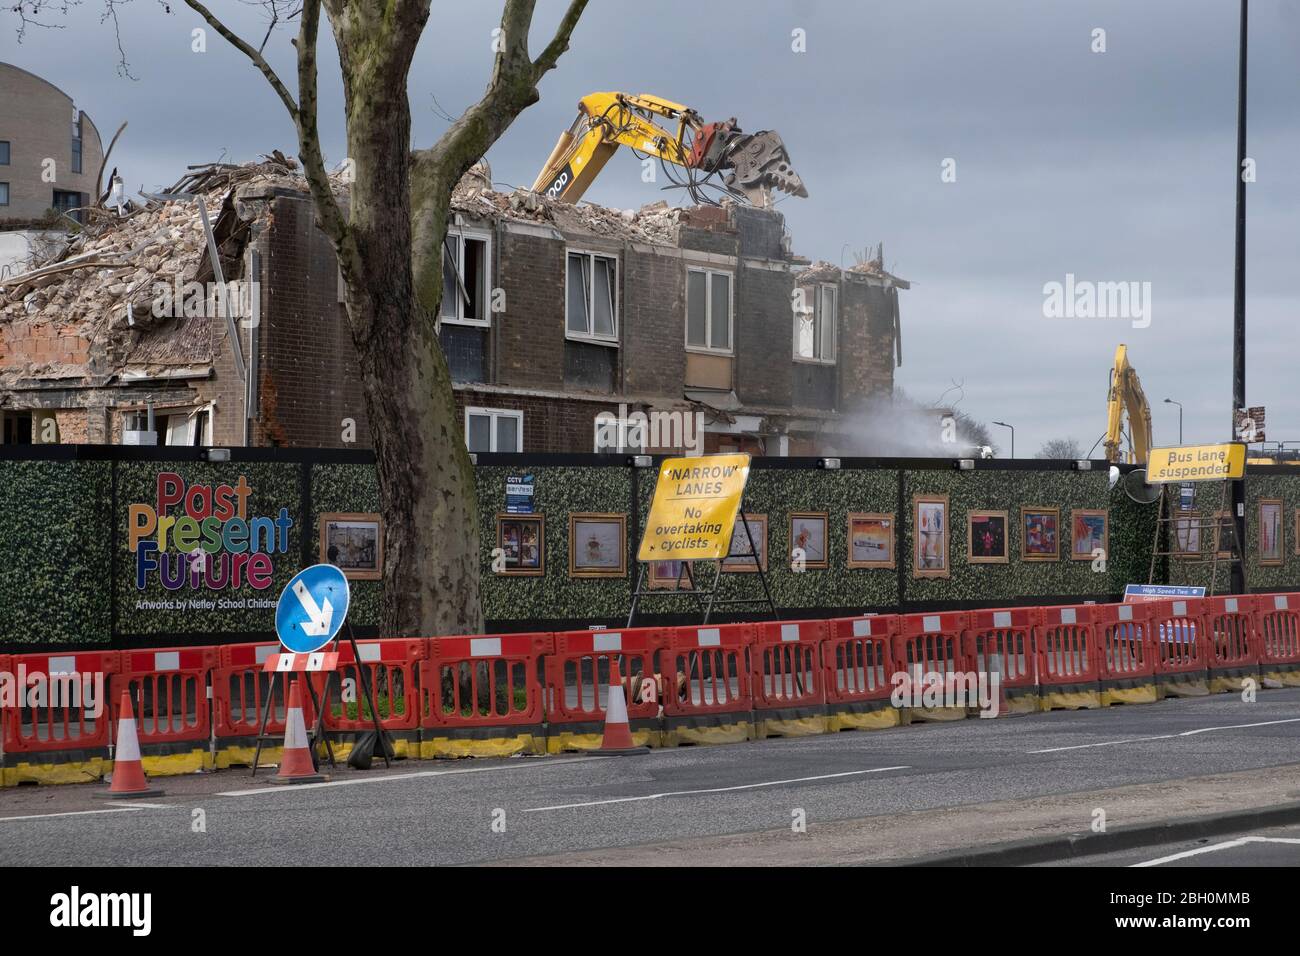 High Speed Two, HS2, demolición de casas en Hampstead Road cerca de Euston para hacer lugar a la construcción de la vía ferroviaria HS2 en marzo de 2020 Foto de stock